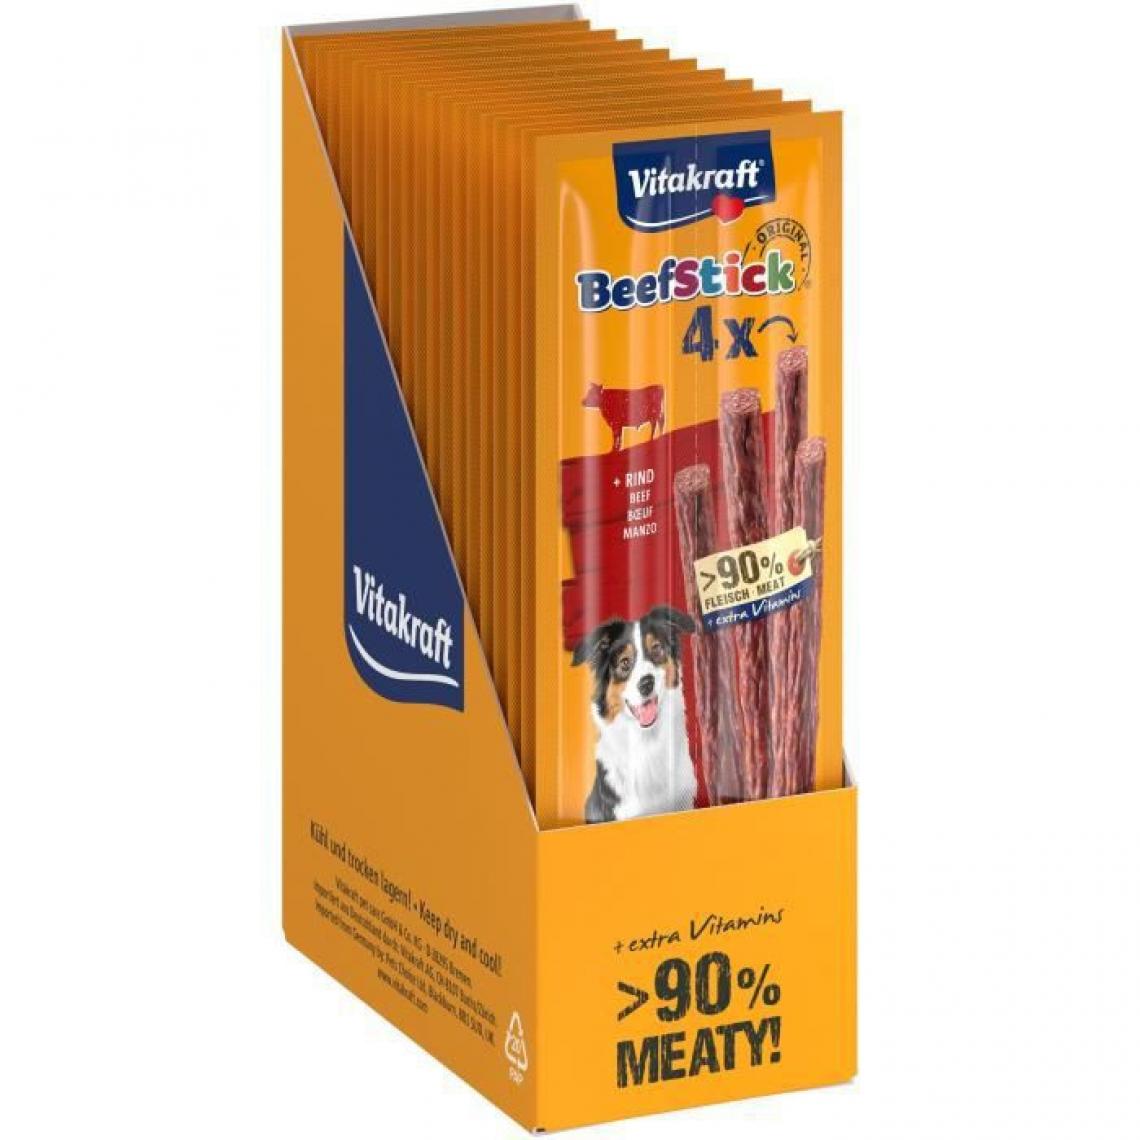 Vitakraft - VITAKRAFT Beef-Stick au Boeuf Friandise pour chien - Lot de 10x4 12g - Croquettes pour chien